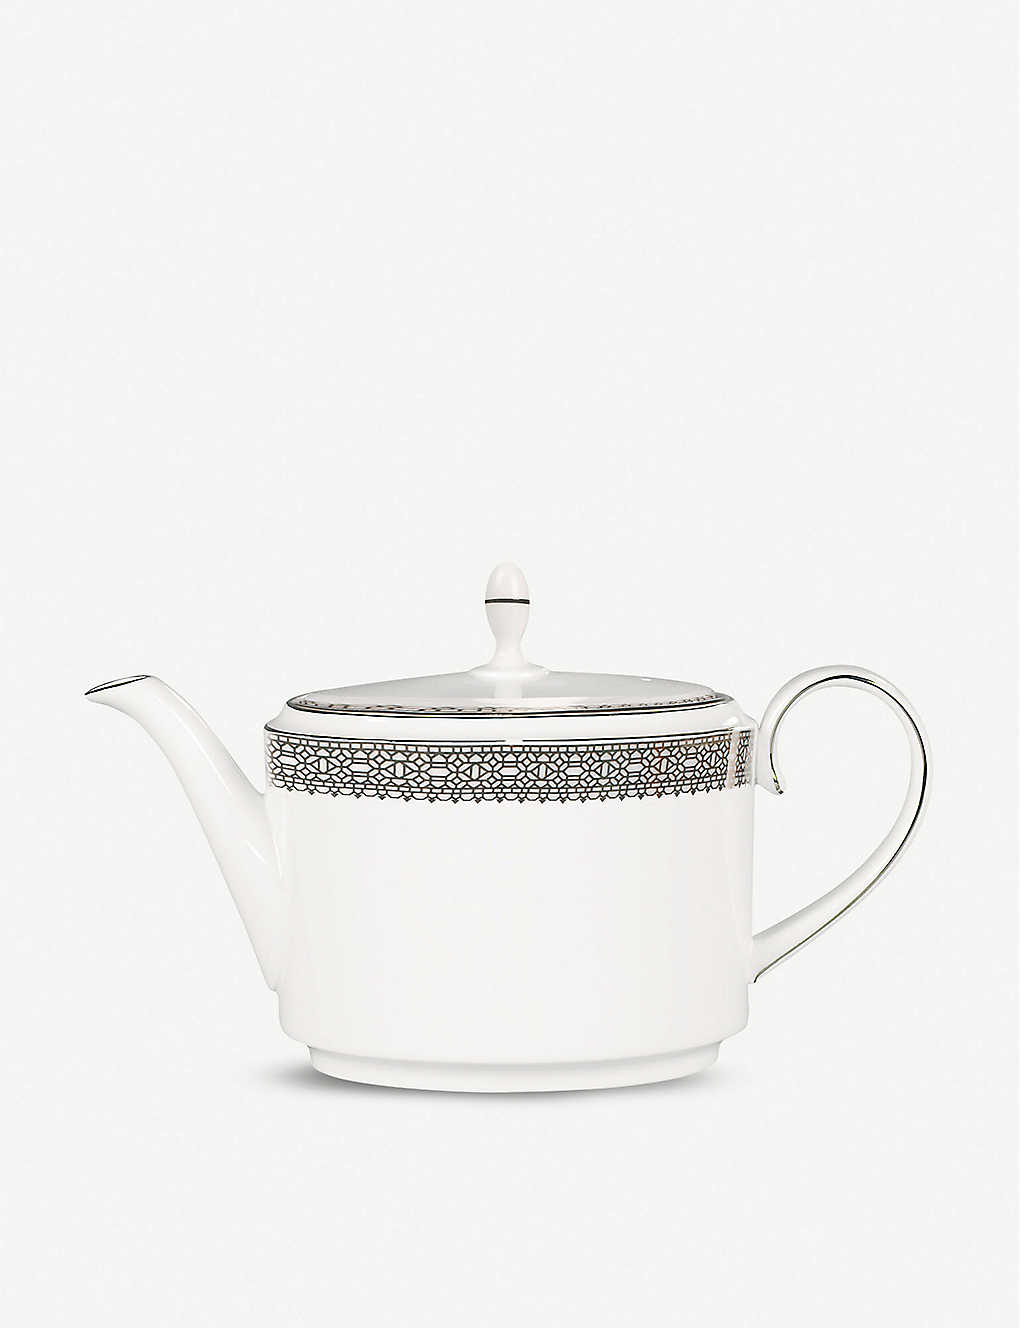 Vera Wang Wedgwood Vera Wang @ Wedgwood Lace Platinum Teapot 13cm